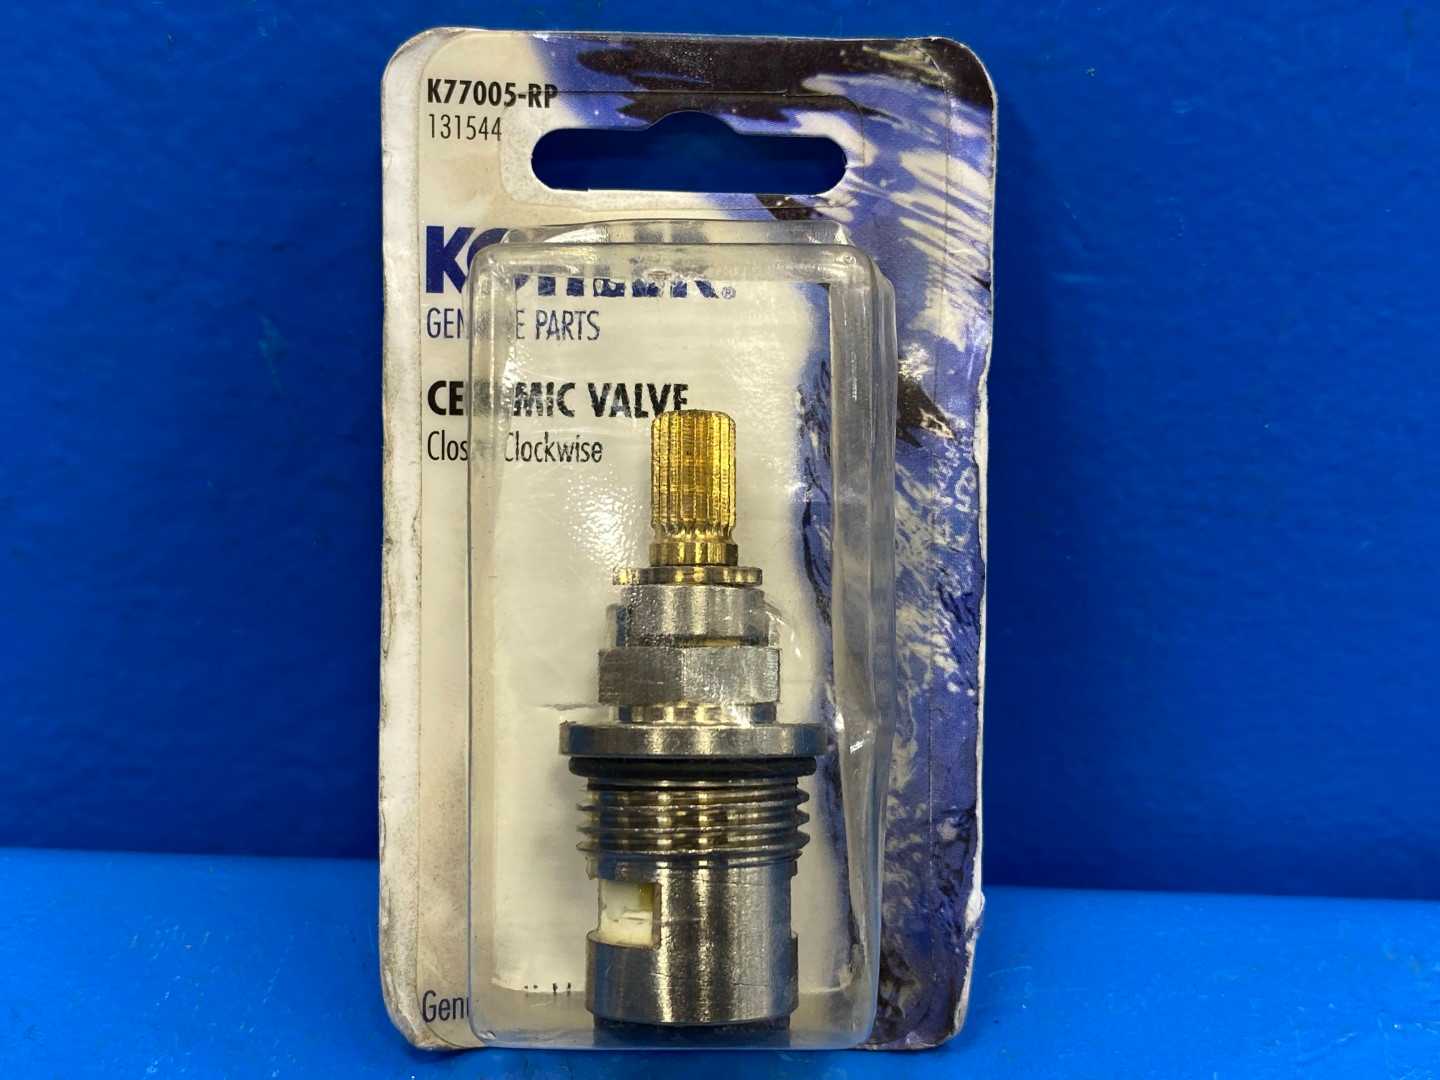 Kohler Ceramic Valve K77005-RP